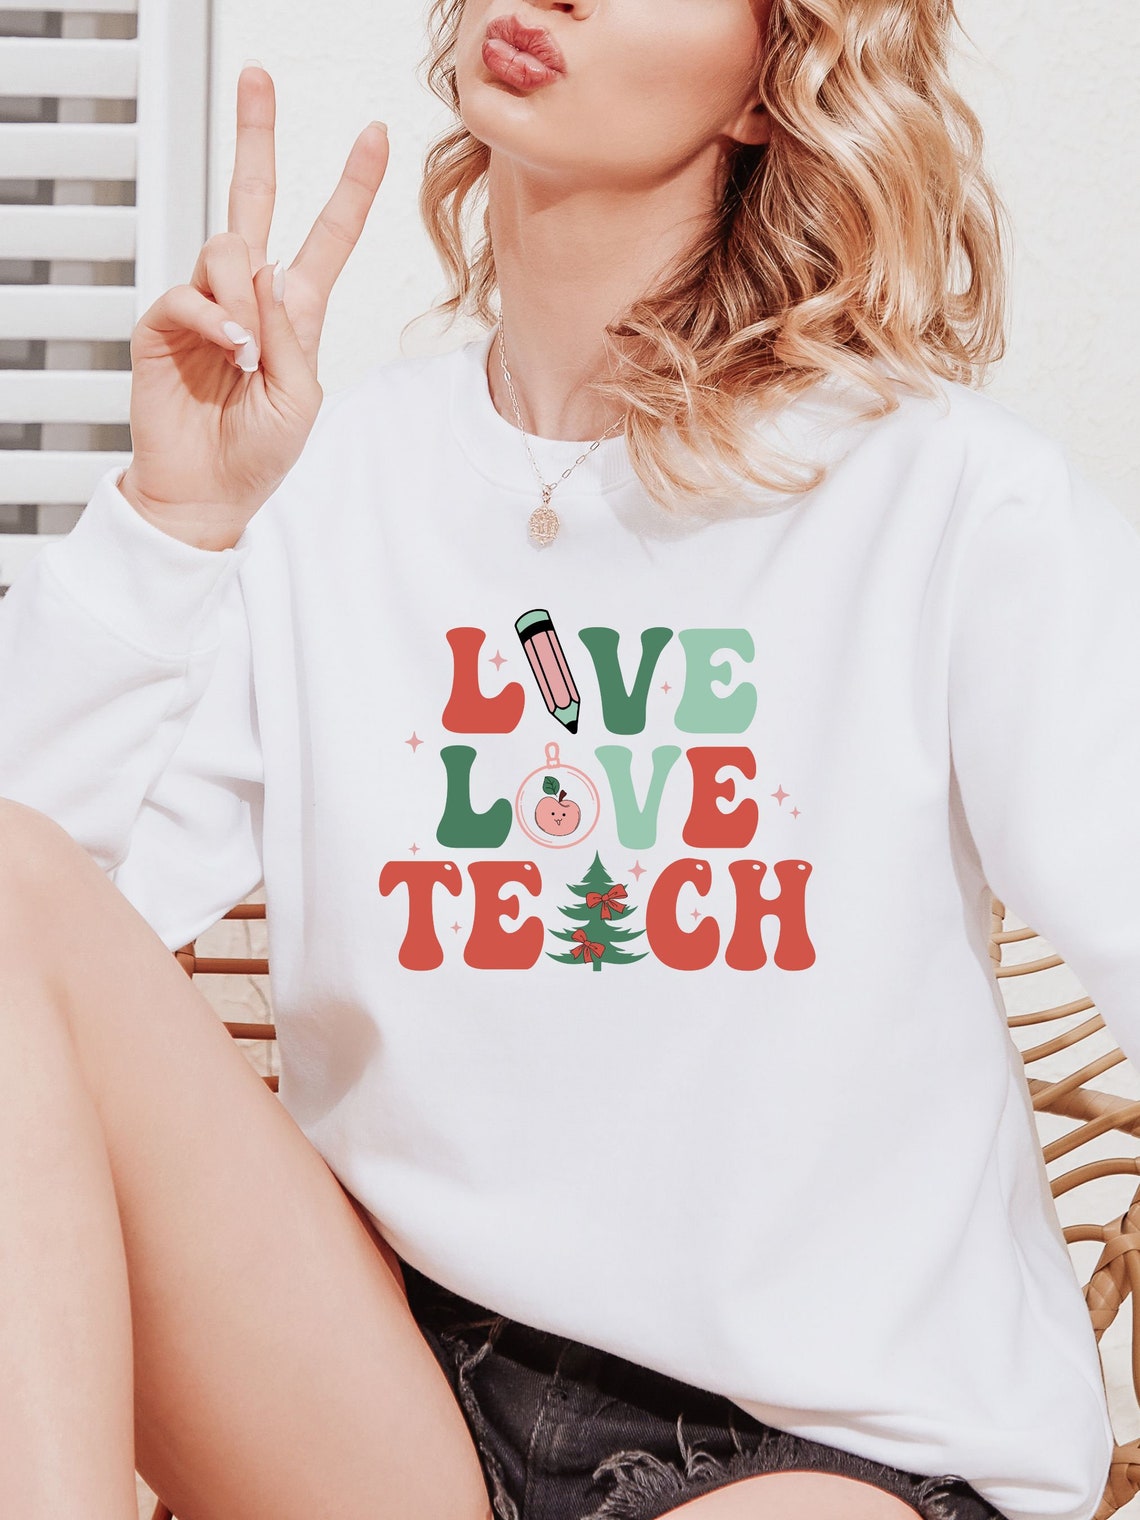 Live Love Teach Christmas Shirt